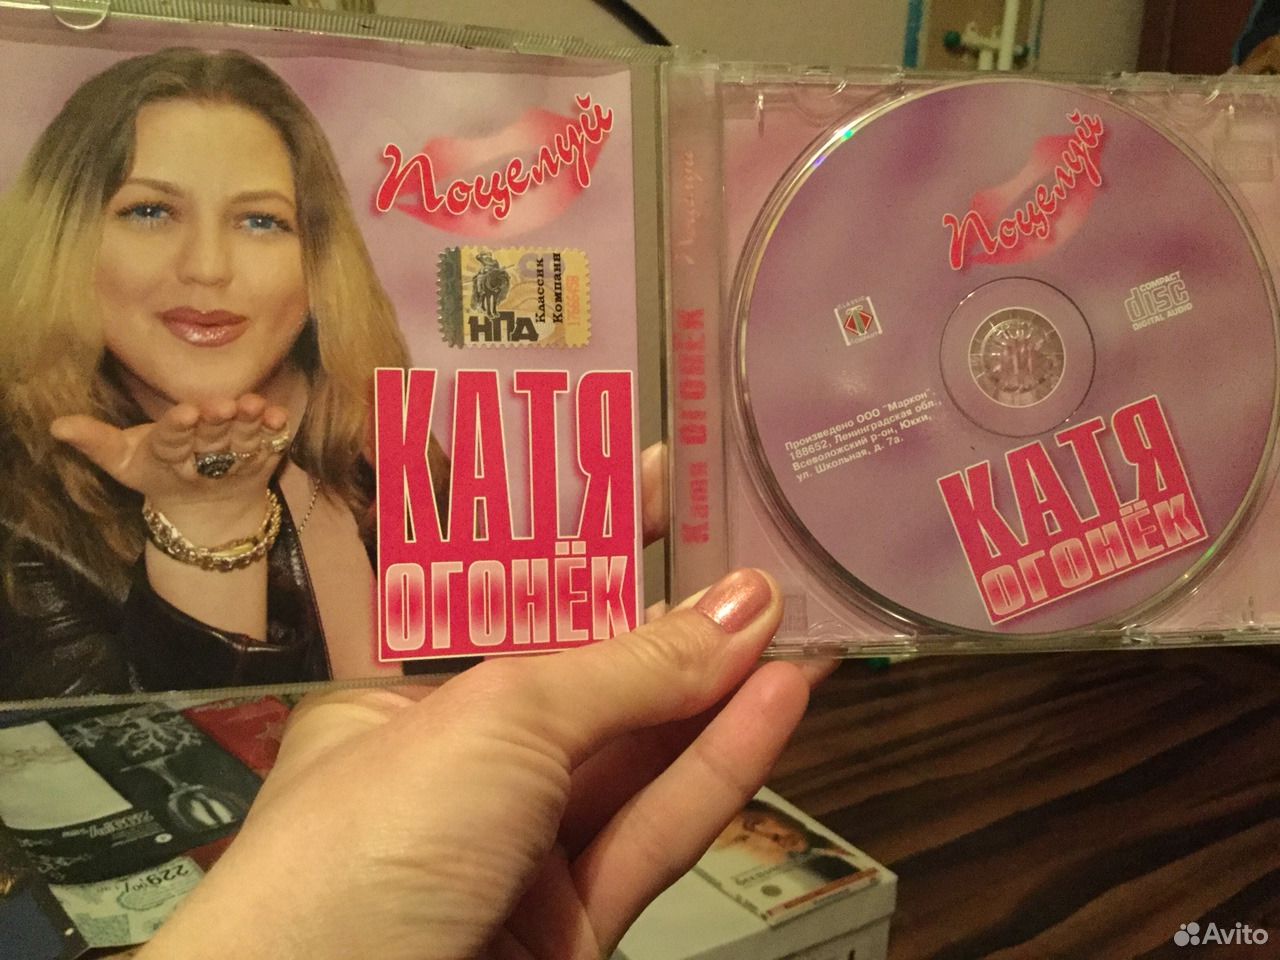 Катя огонёк - 2005 - Катя